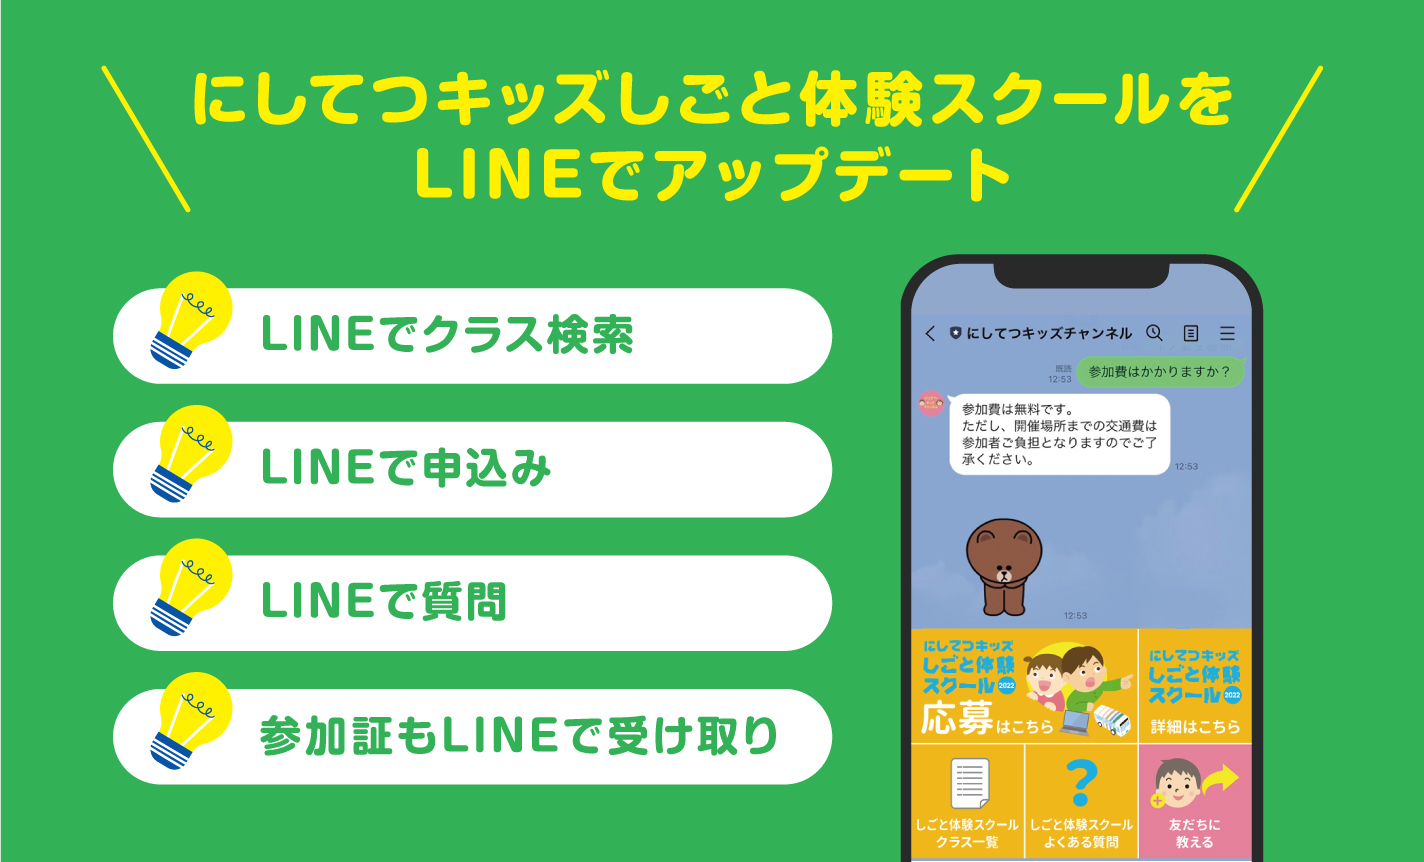 LINE FukuokaAuɂĂLbYƑ̌XN[vɎQ@Yahoo! JAPANƍŃGWjAEL̂Ƒ̌NXJÁ@LINEAJEgŃCxgDXT|[g@EBɍƂƂĎSqǂB̈琬x